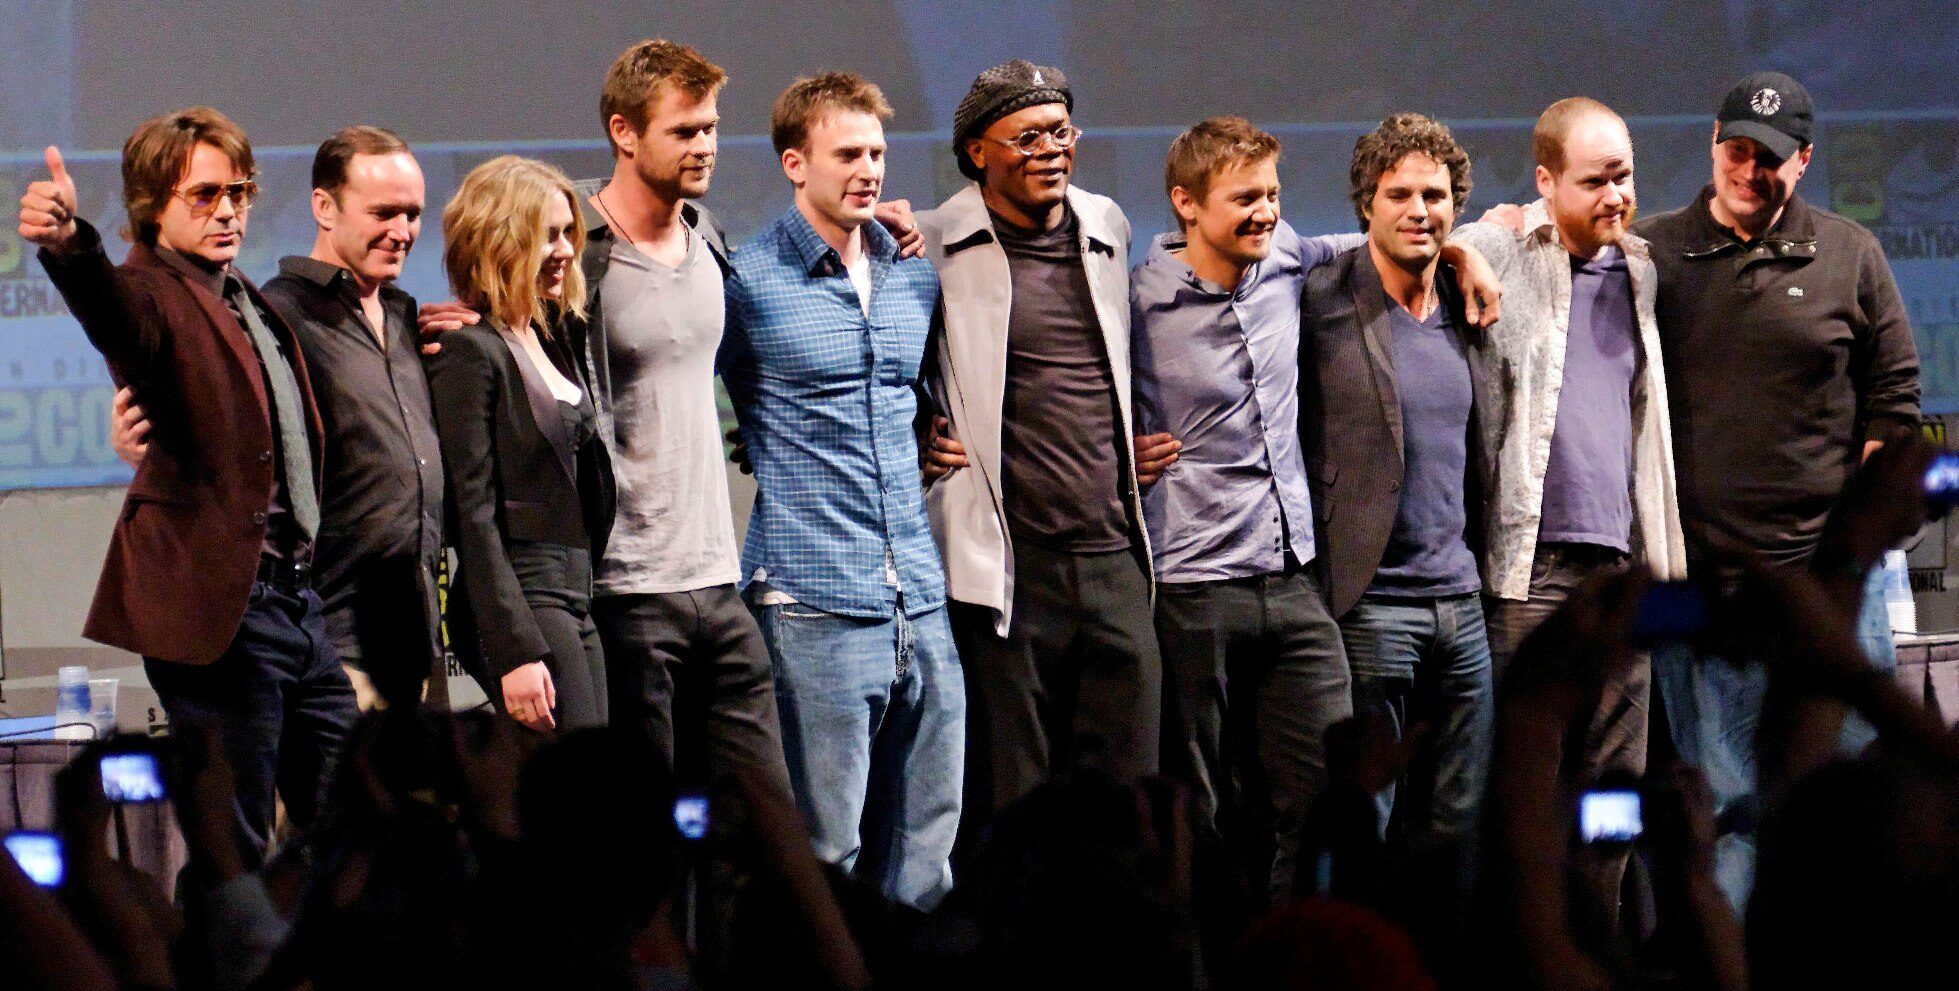 Melhores do Mundo - The Avengers Cast 2010 Comic Con cropped 3265321